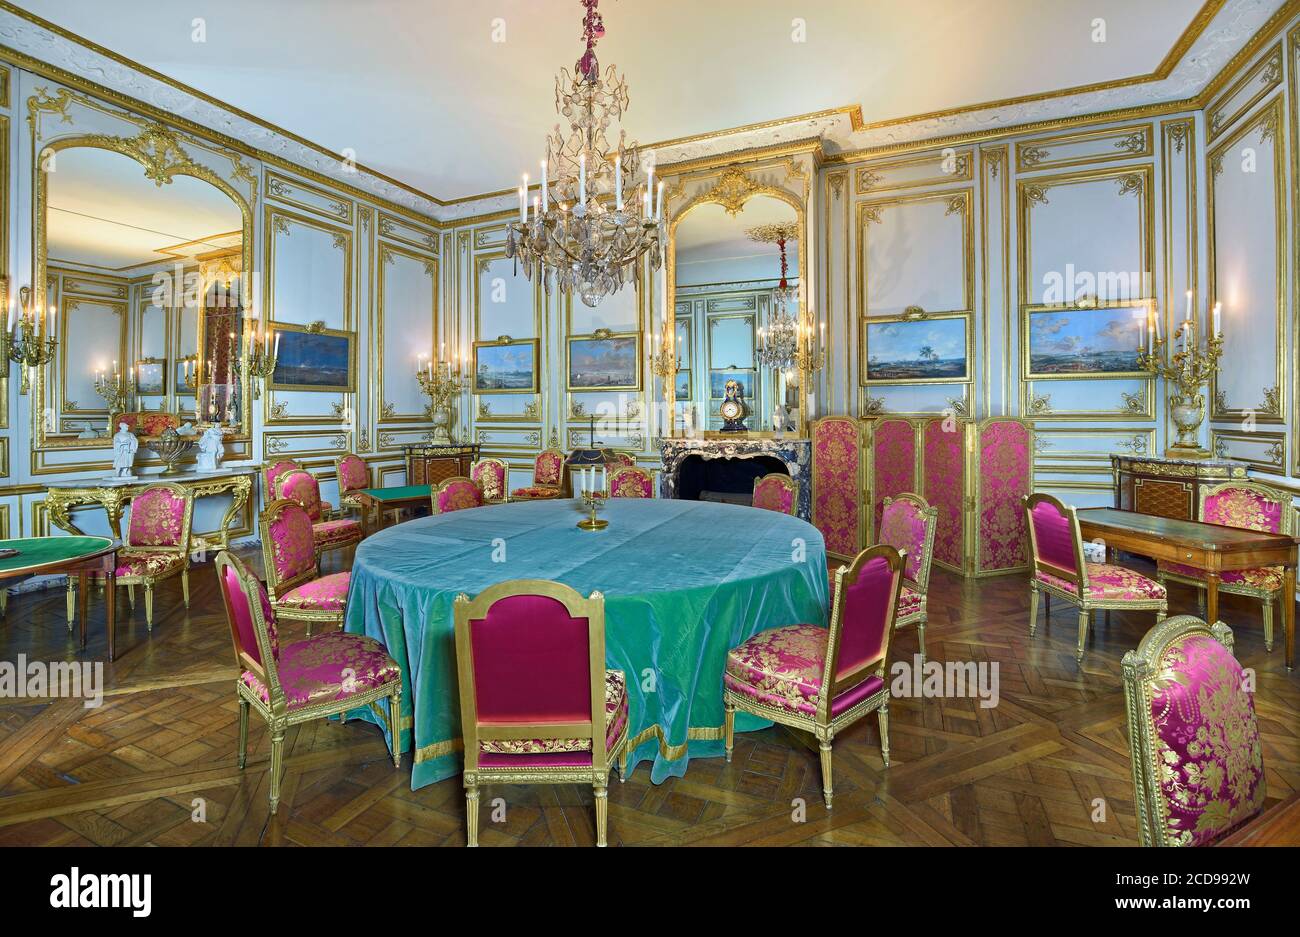 France, Yvelines, Versailles, château de Versailles classé au patrimoine mondial de l'UNESCO, appartement privé du roi, salle de jeux Louis XVI Banque D'Images